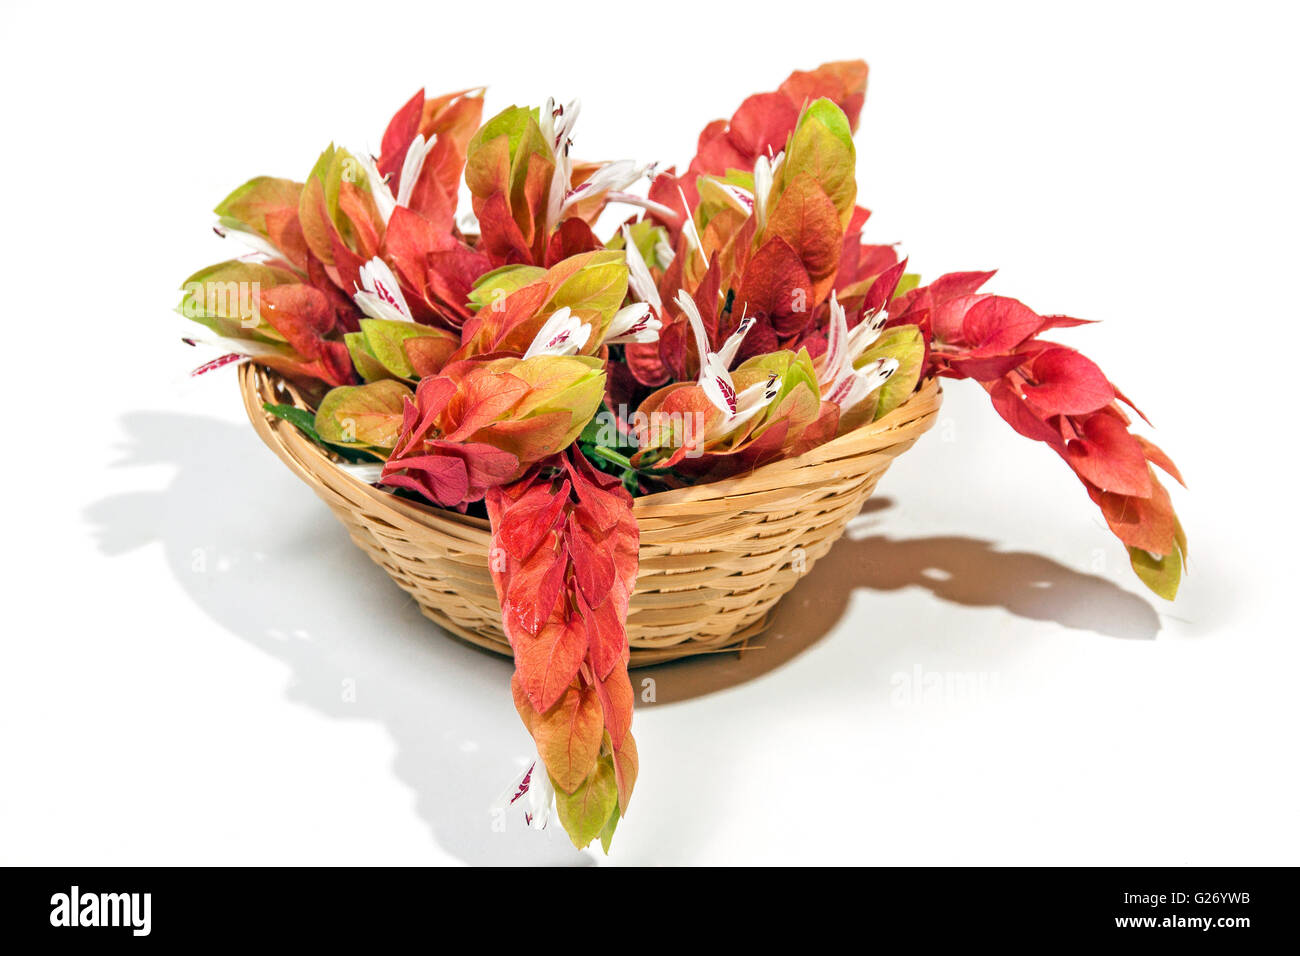 Affichage des crevettes Crevettes roses fleurs en tissu panier en osier  Photo Stock - Alamy